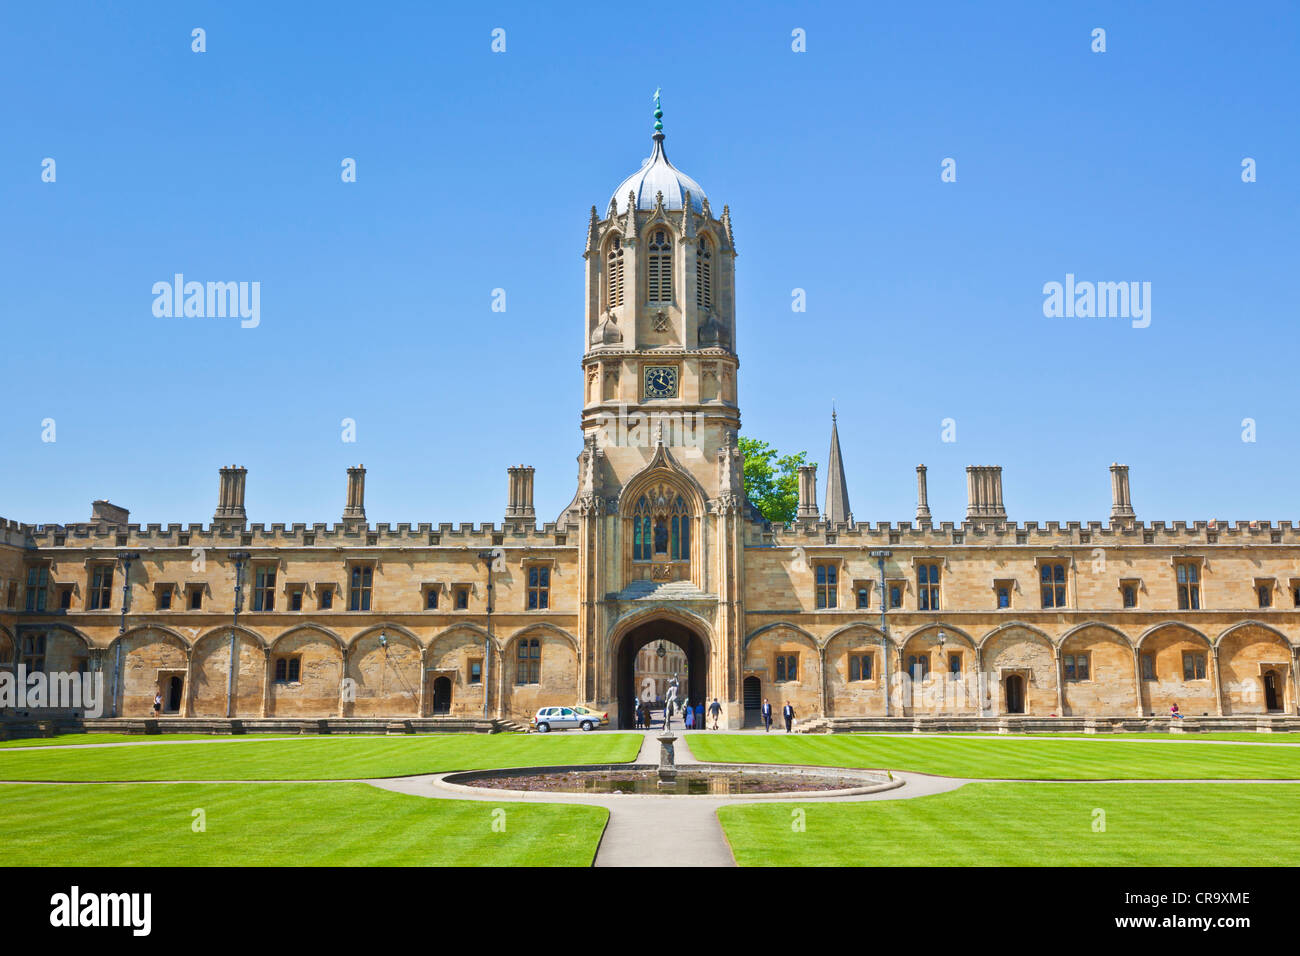 Christ Church college Tom Quad et Tom Tower l'Université d'Oxford Oxfordshire England UK GB EU Europe Banque D'Images